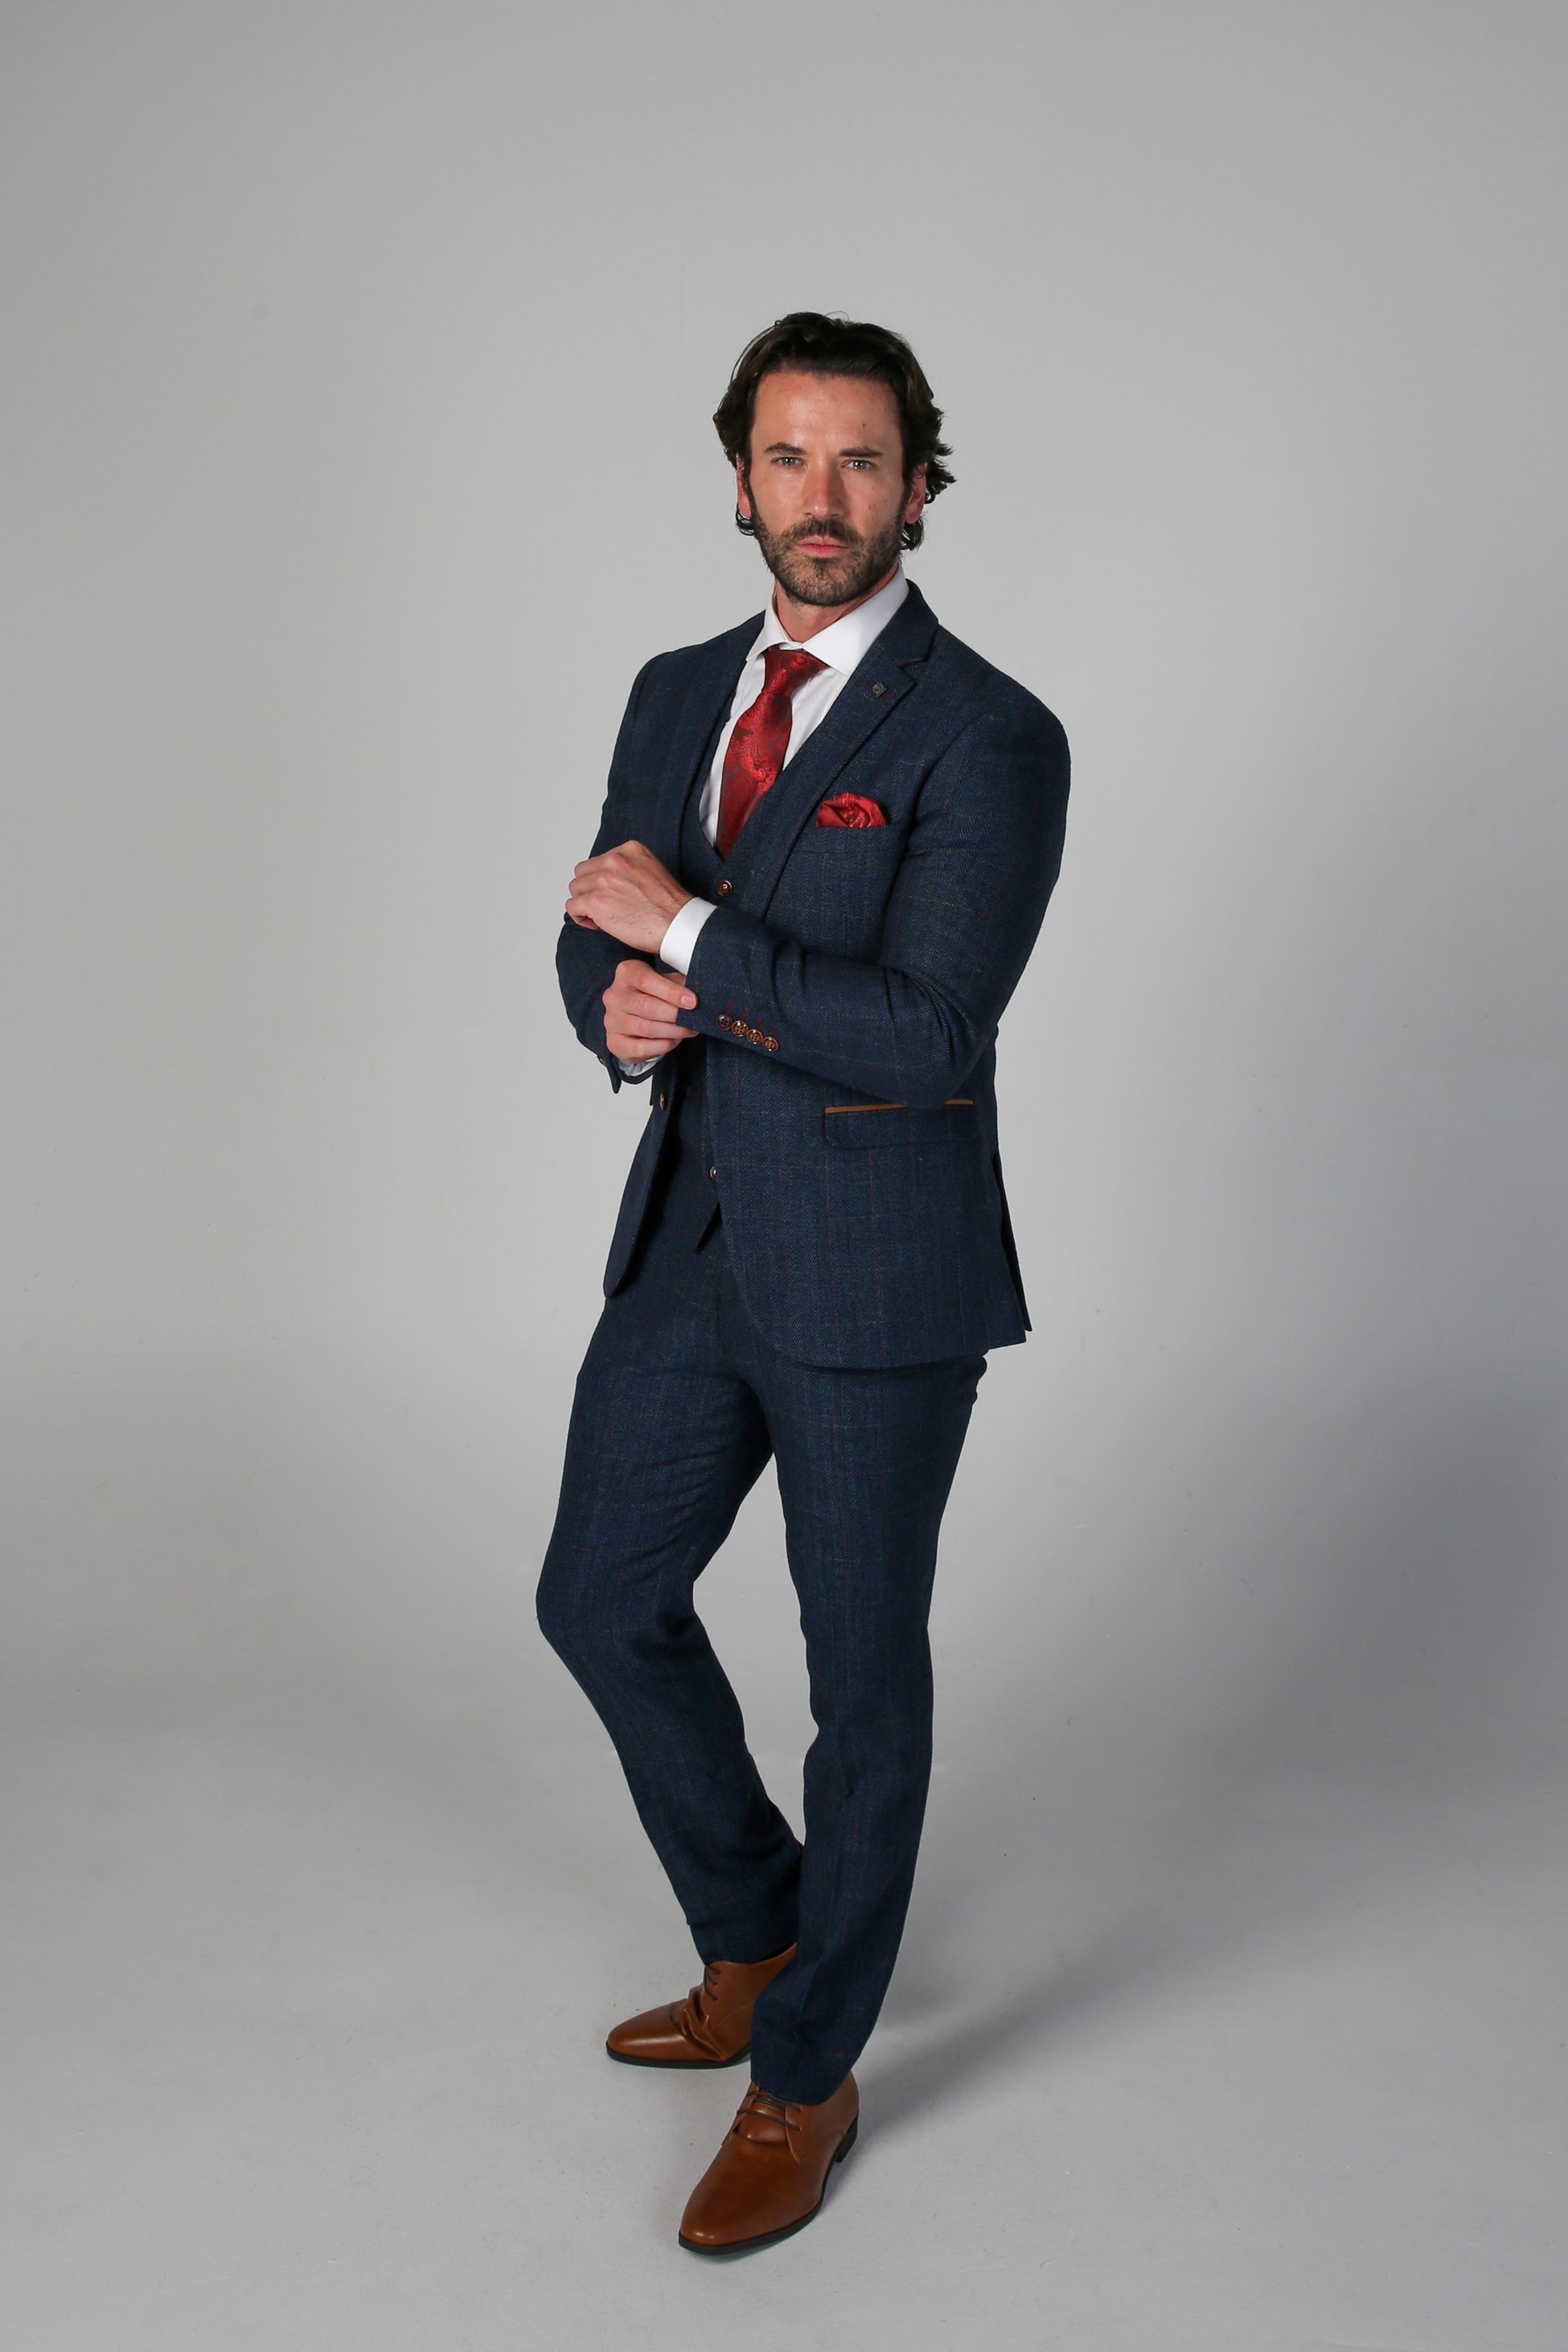 Herren Tweed Herringbone Anzug in Marineblau, 3-teilig, für Hochzeiten und Geschäftsanlässe, Taillierter Schnitt